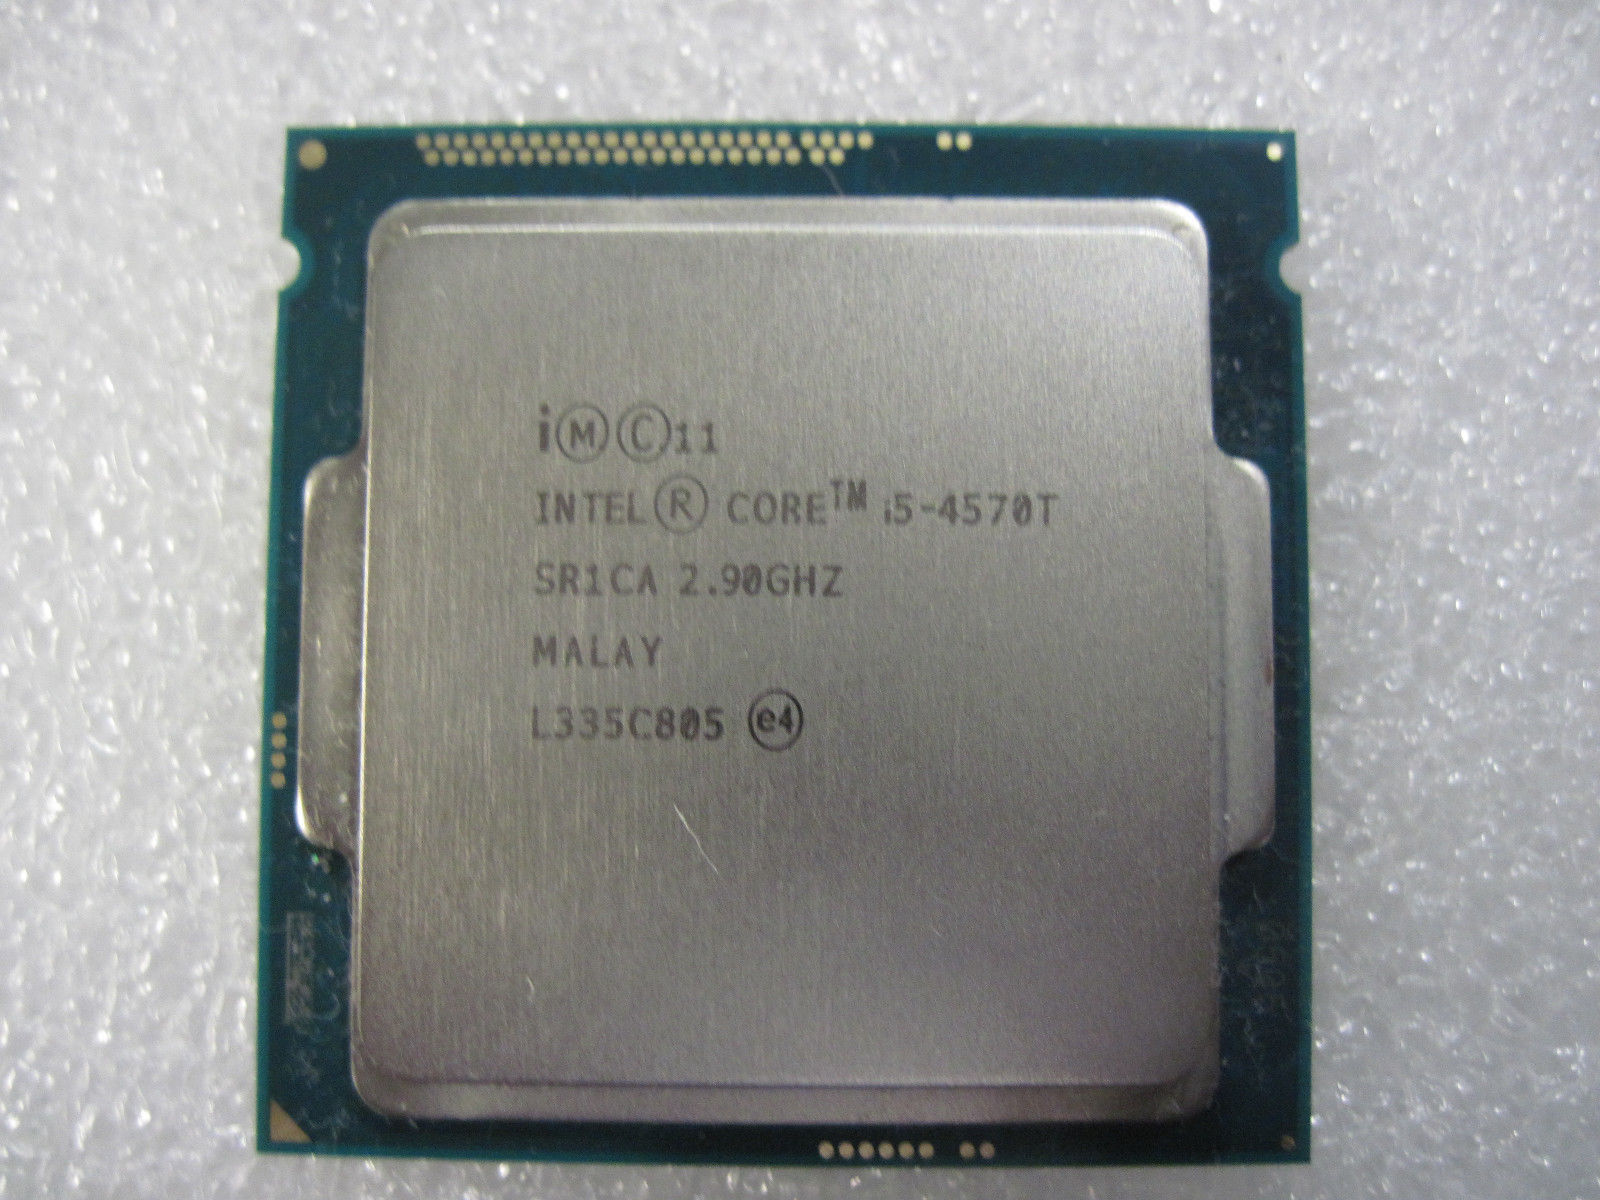 Intel i5-4570T Haswell Dual-Core 2.9 GHz LGA 1150 35W Intel HD Graphics 4600 (SR1CA) Desktop Processor.